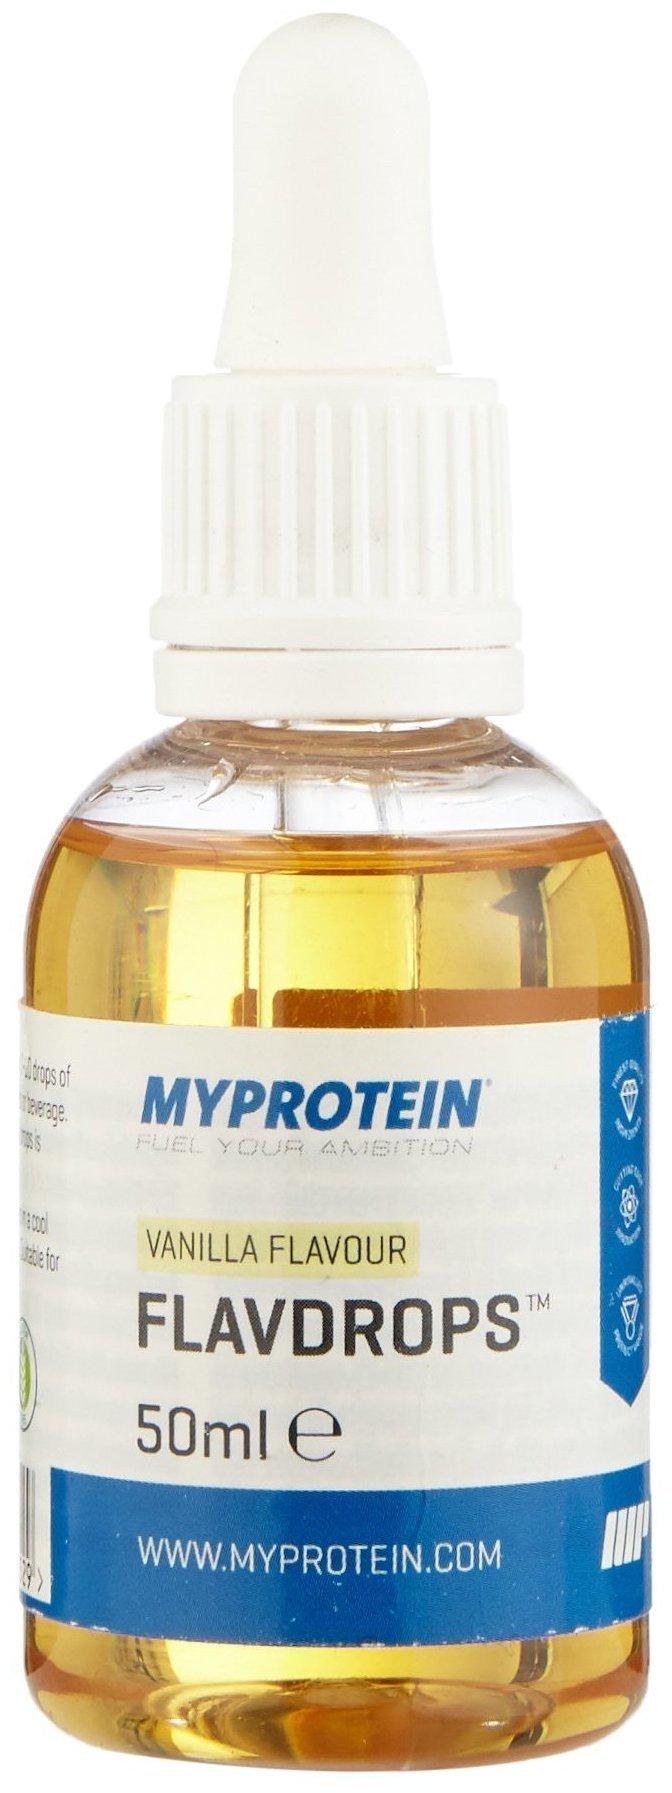 Myprotein FlavDrops Vanille 50ml Test - ab 5,99 €